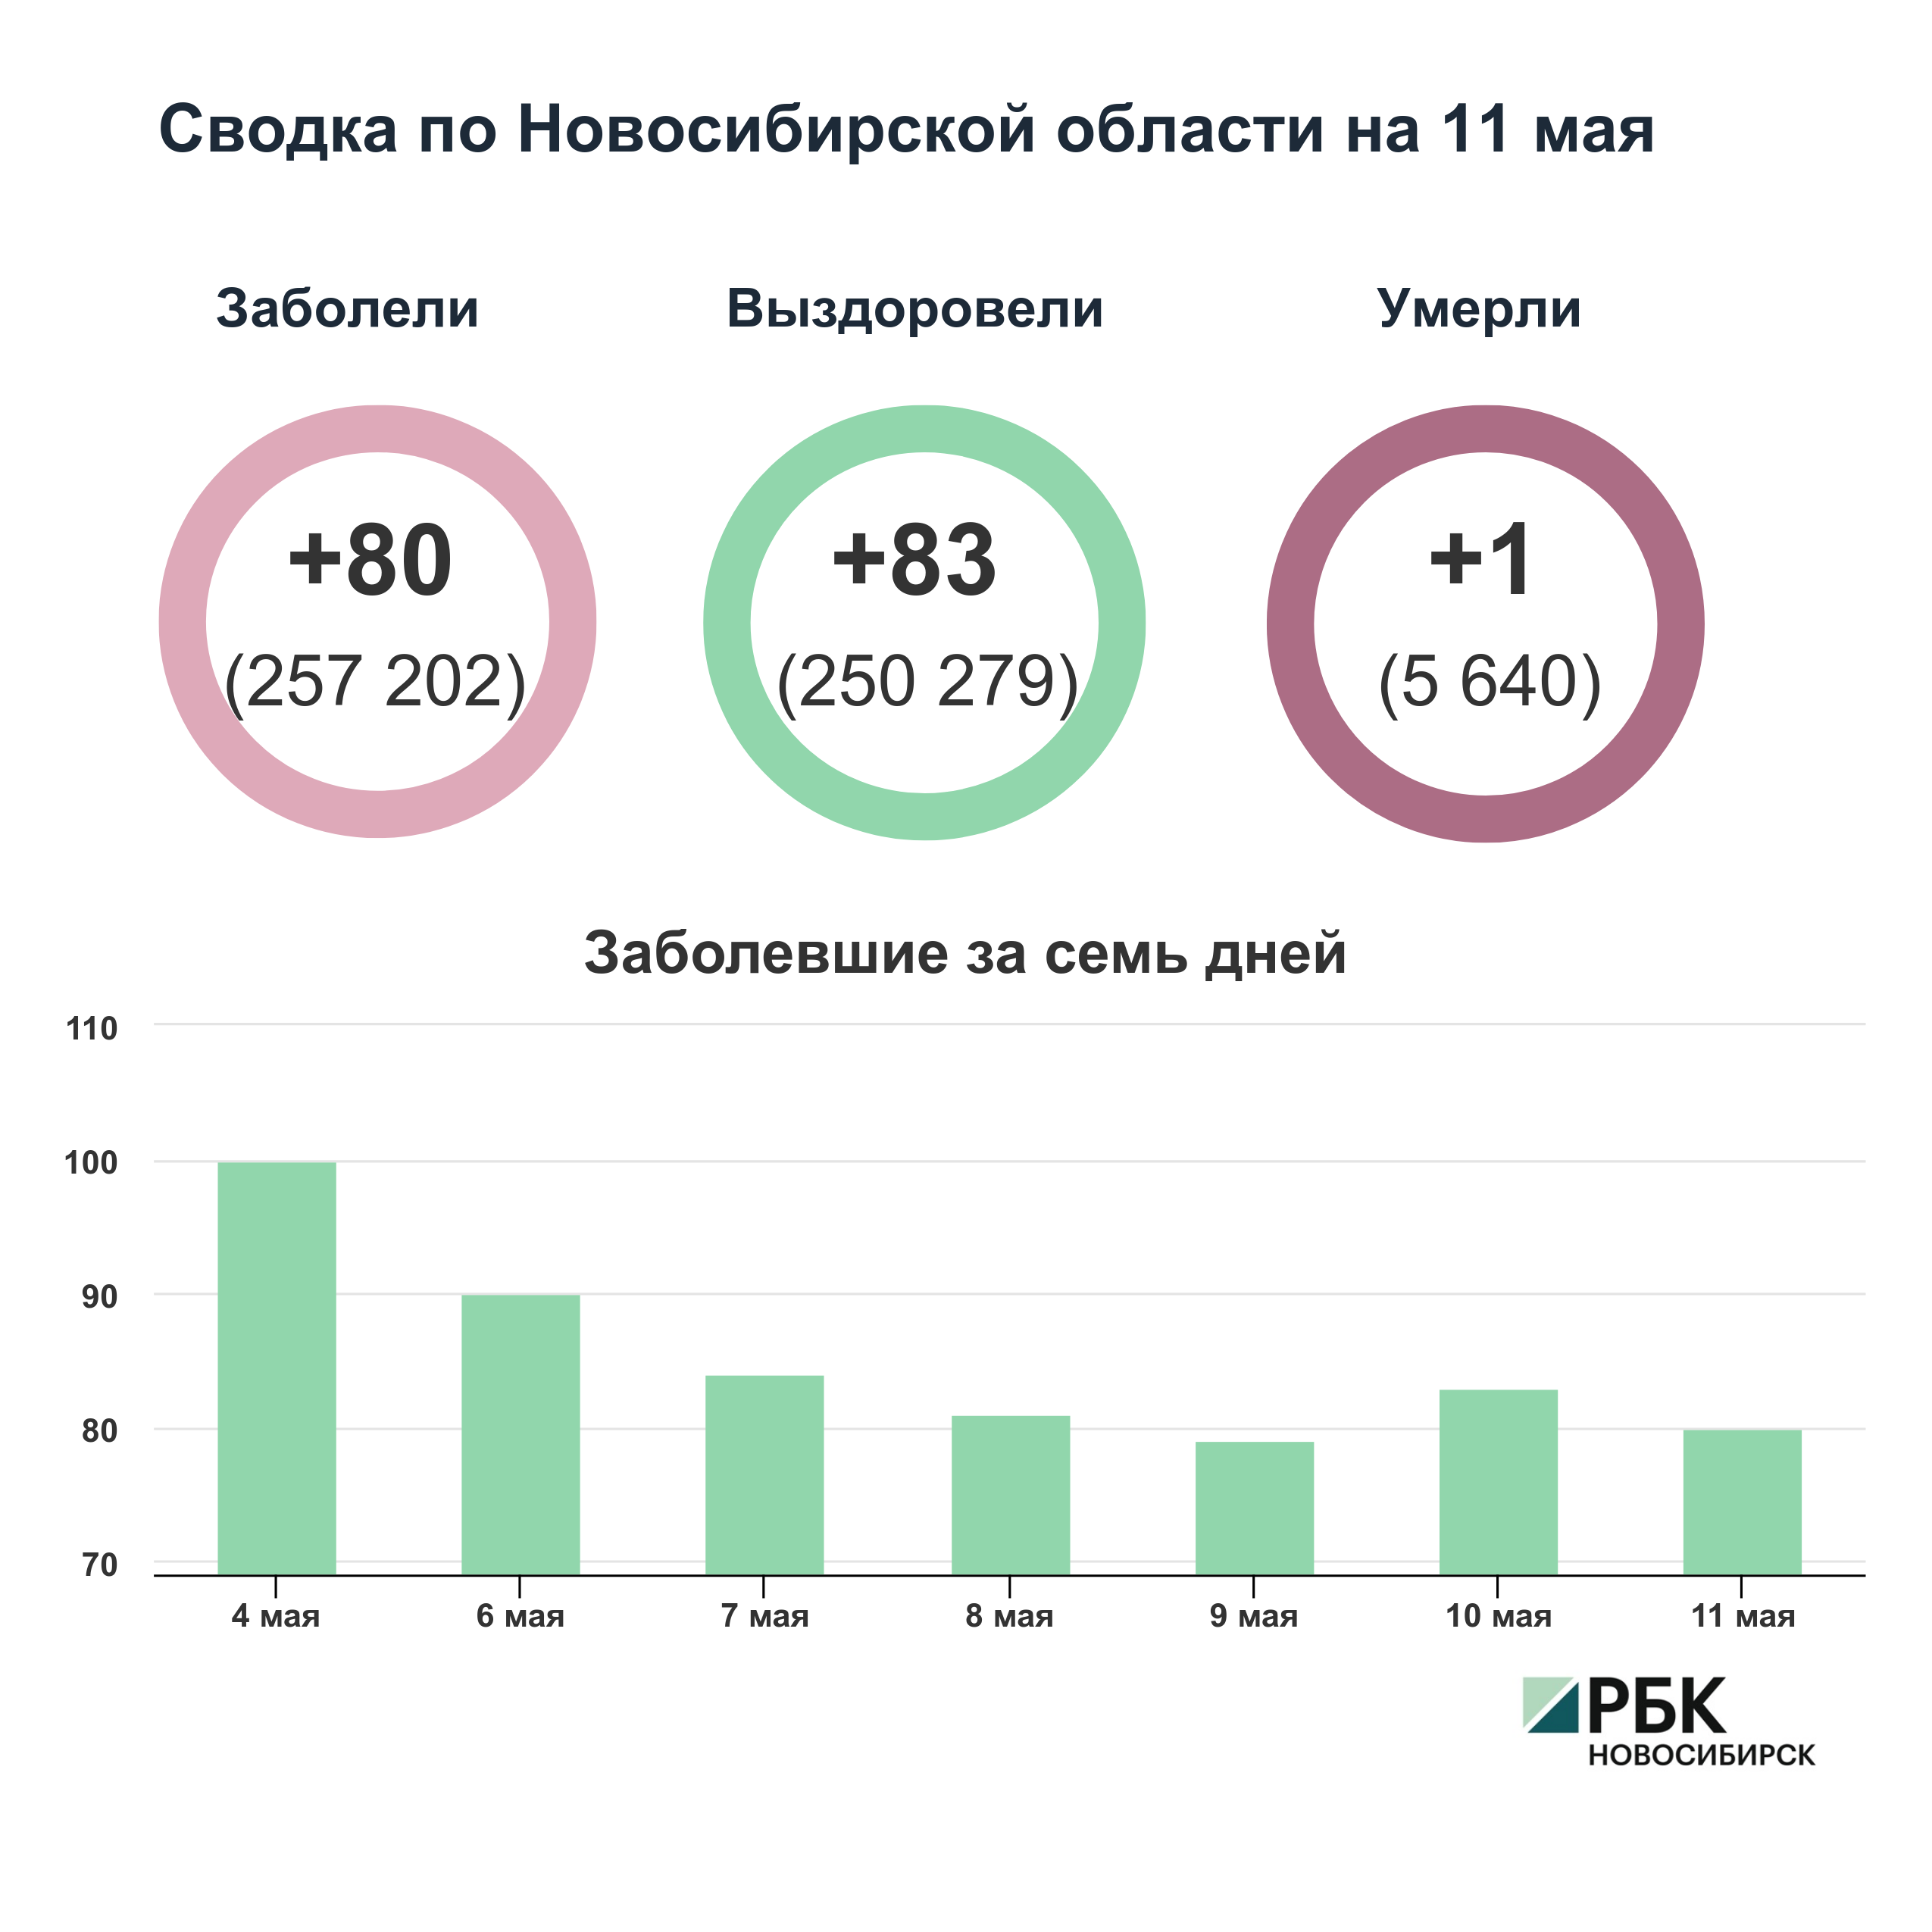 Коронавирус в Новосибирске: сводка на 11 мая